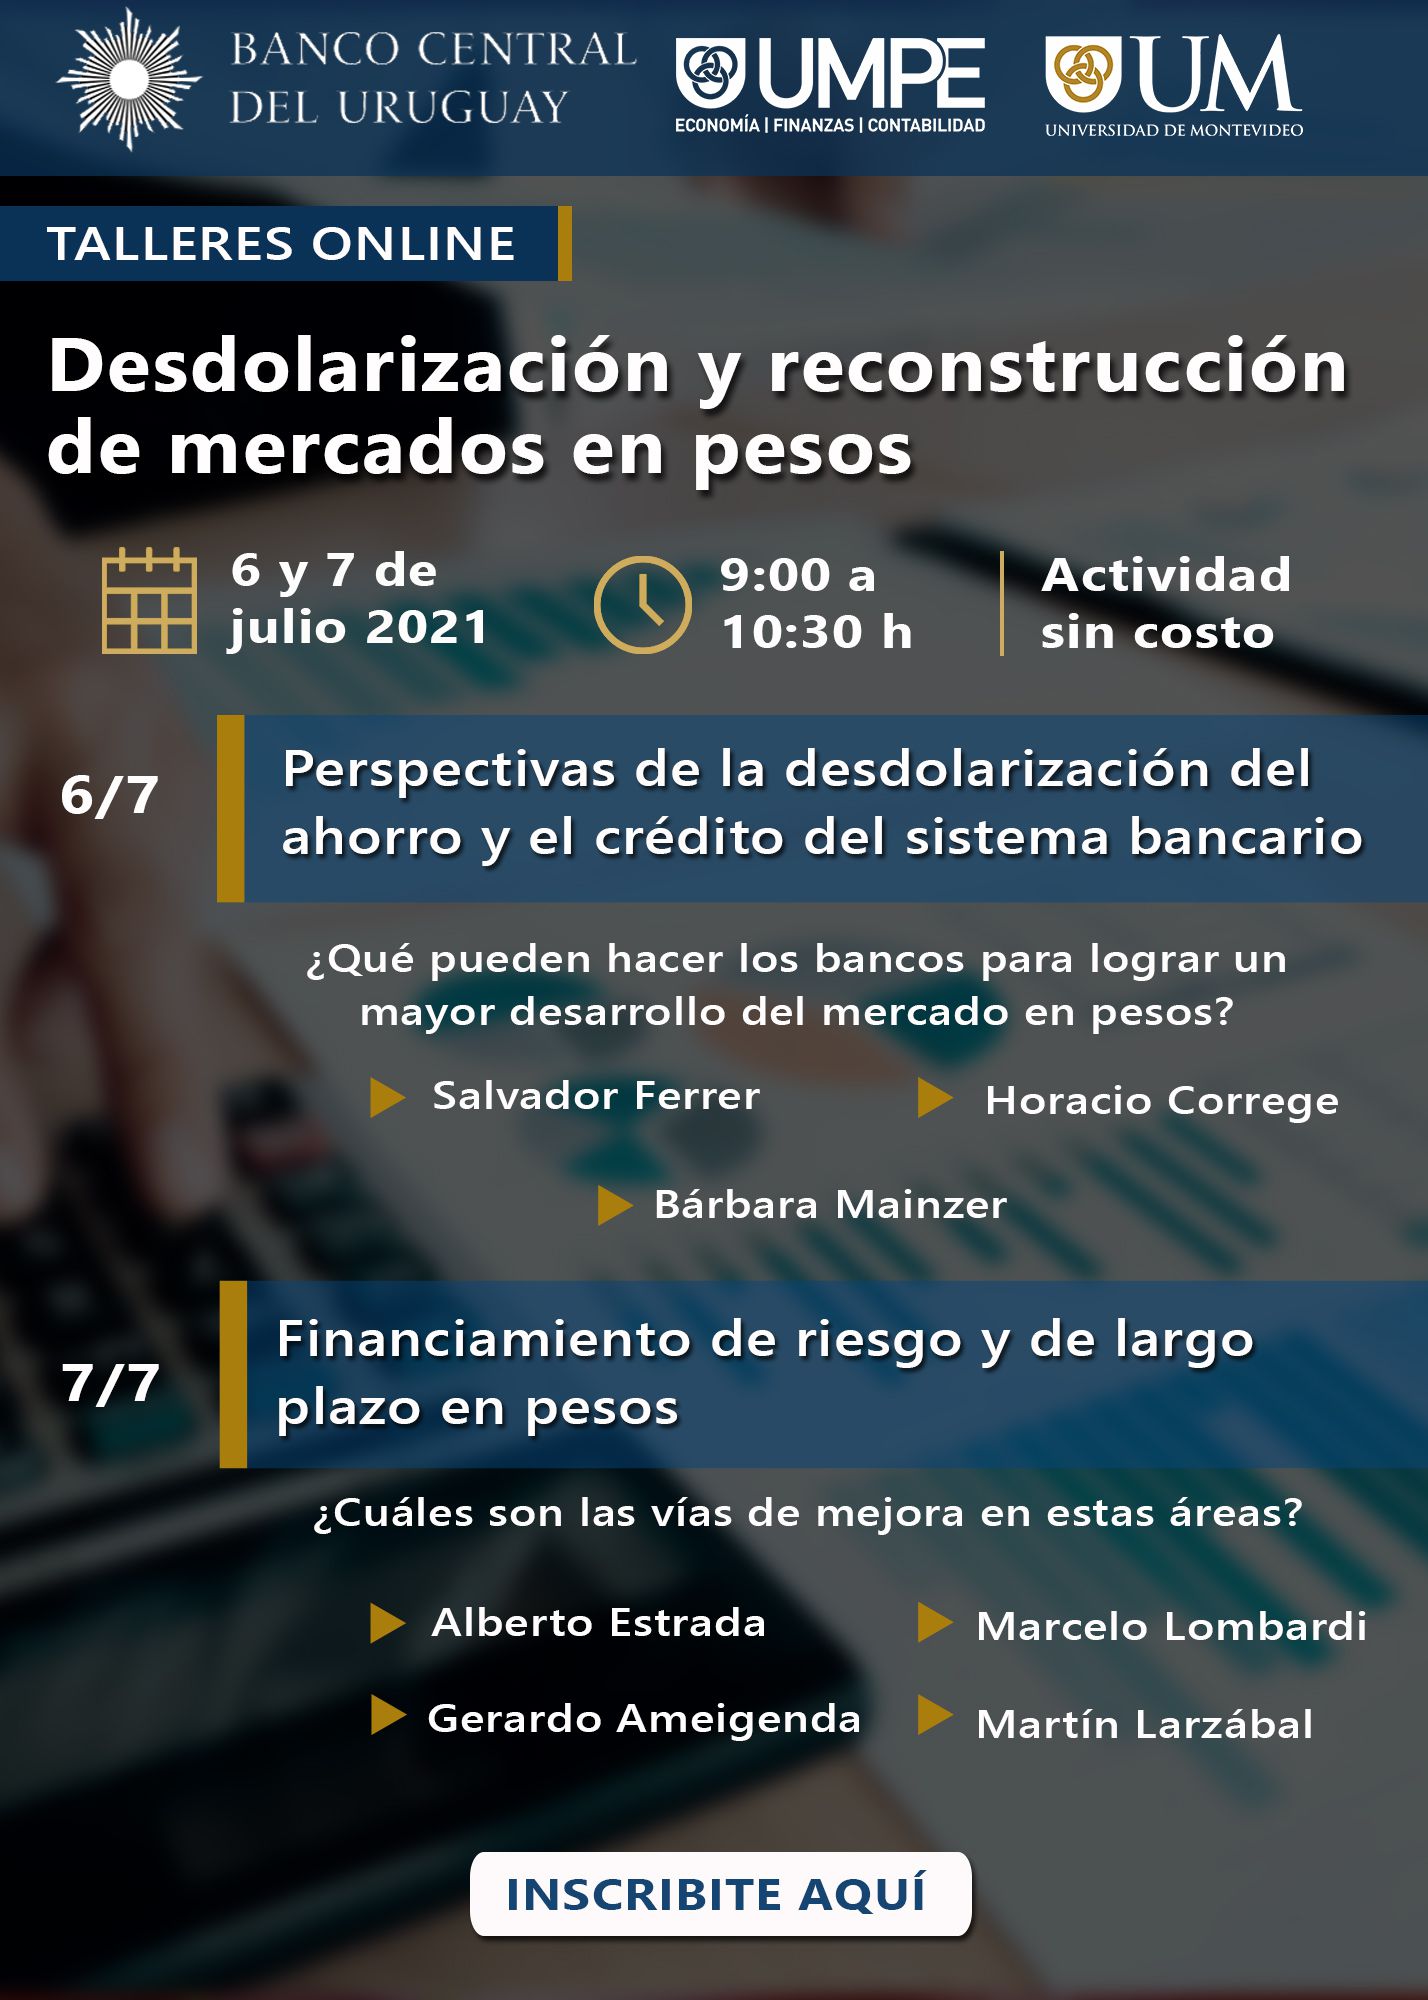 Talleres: Desdolarización y reconstrucción de mercados en pesos